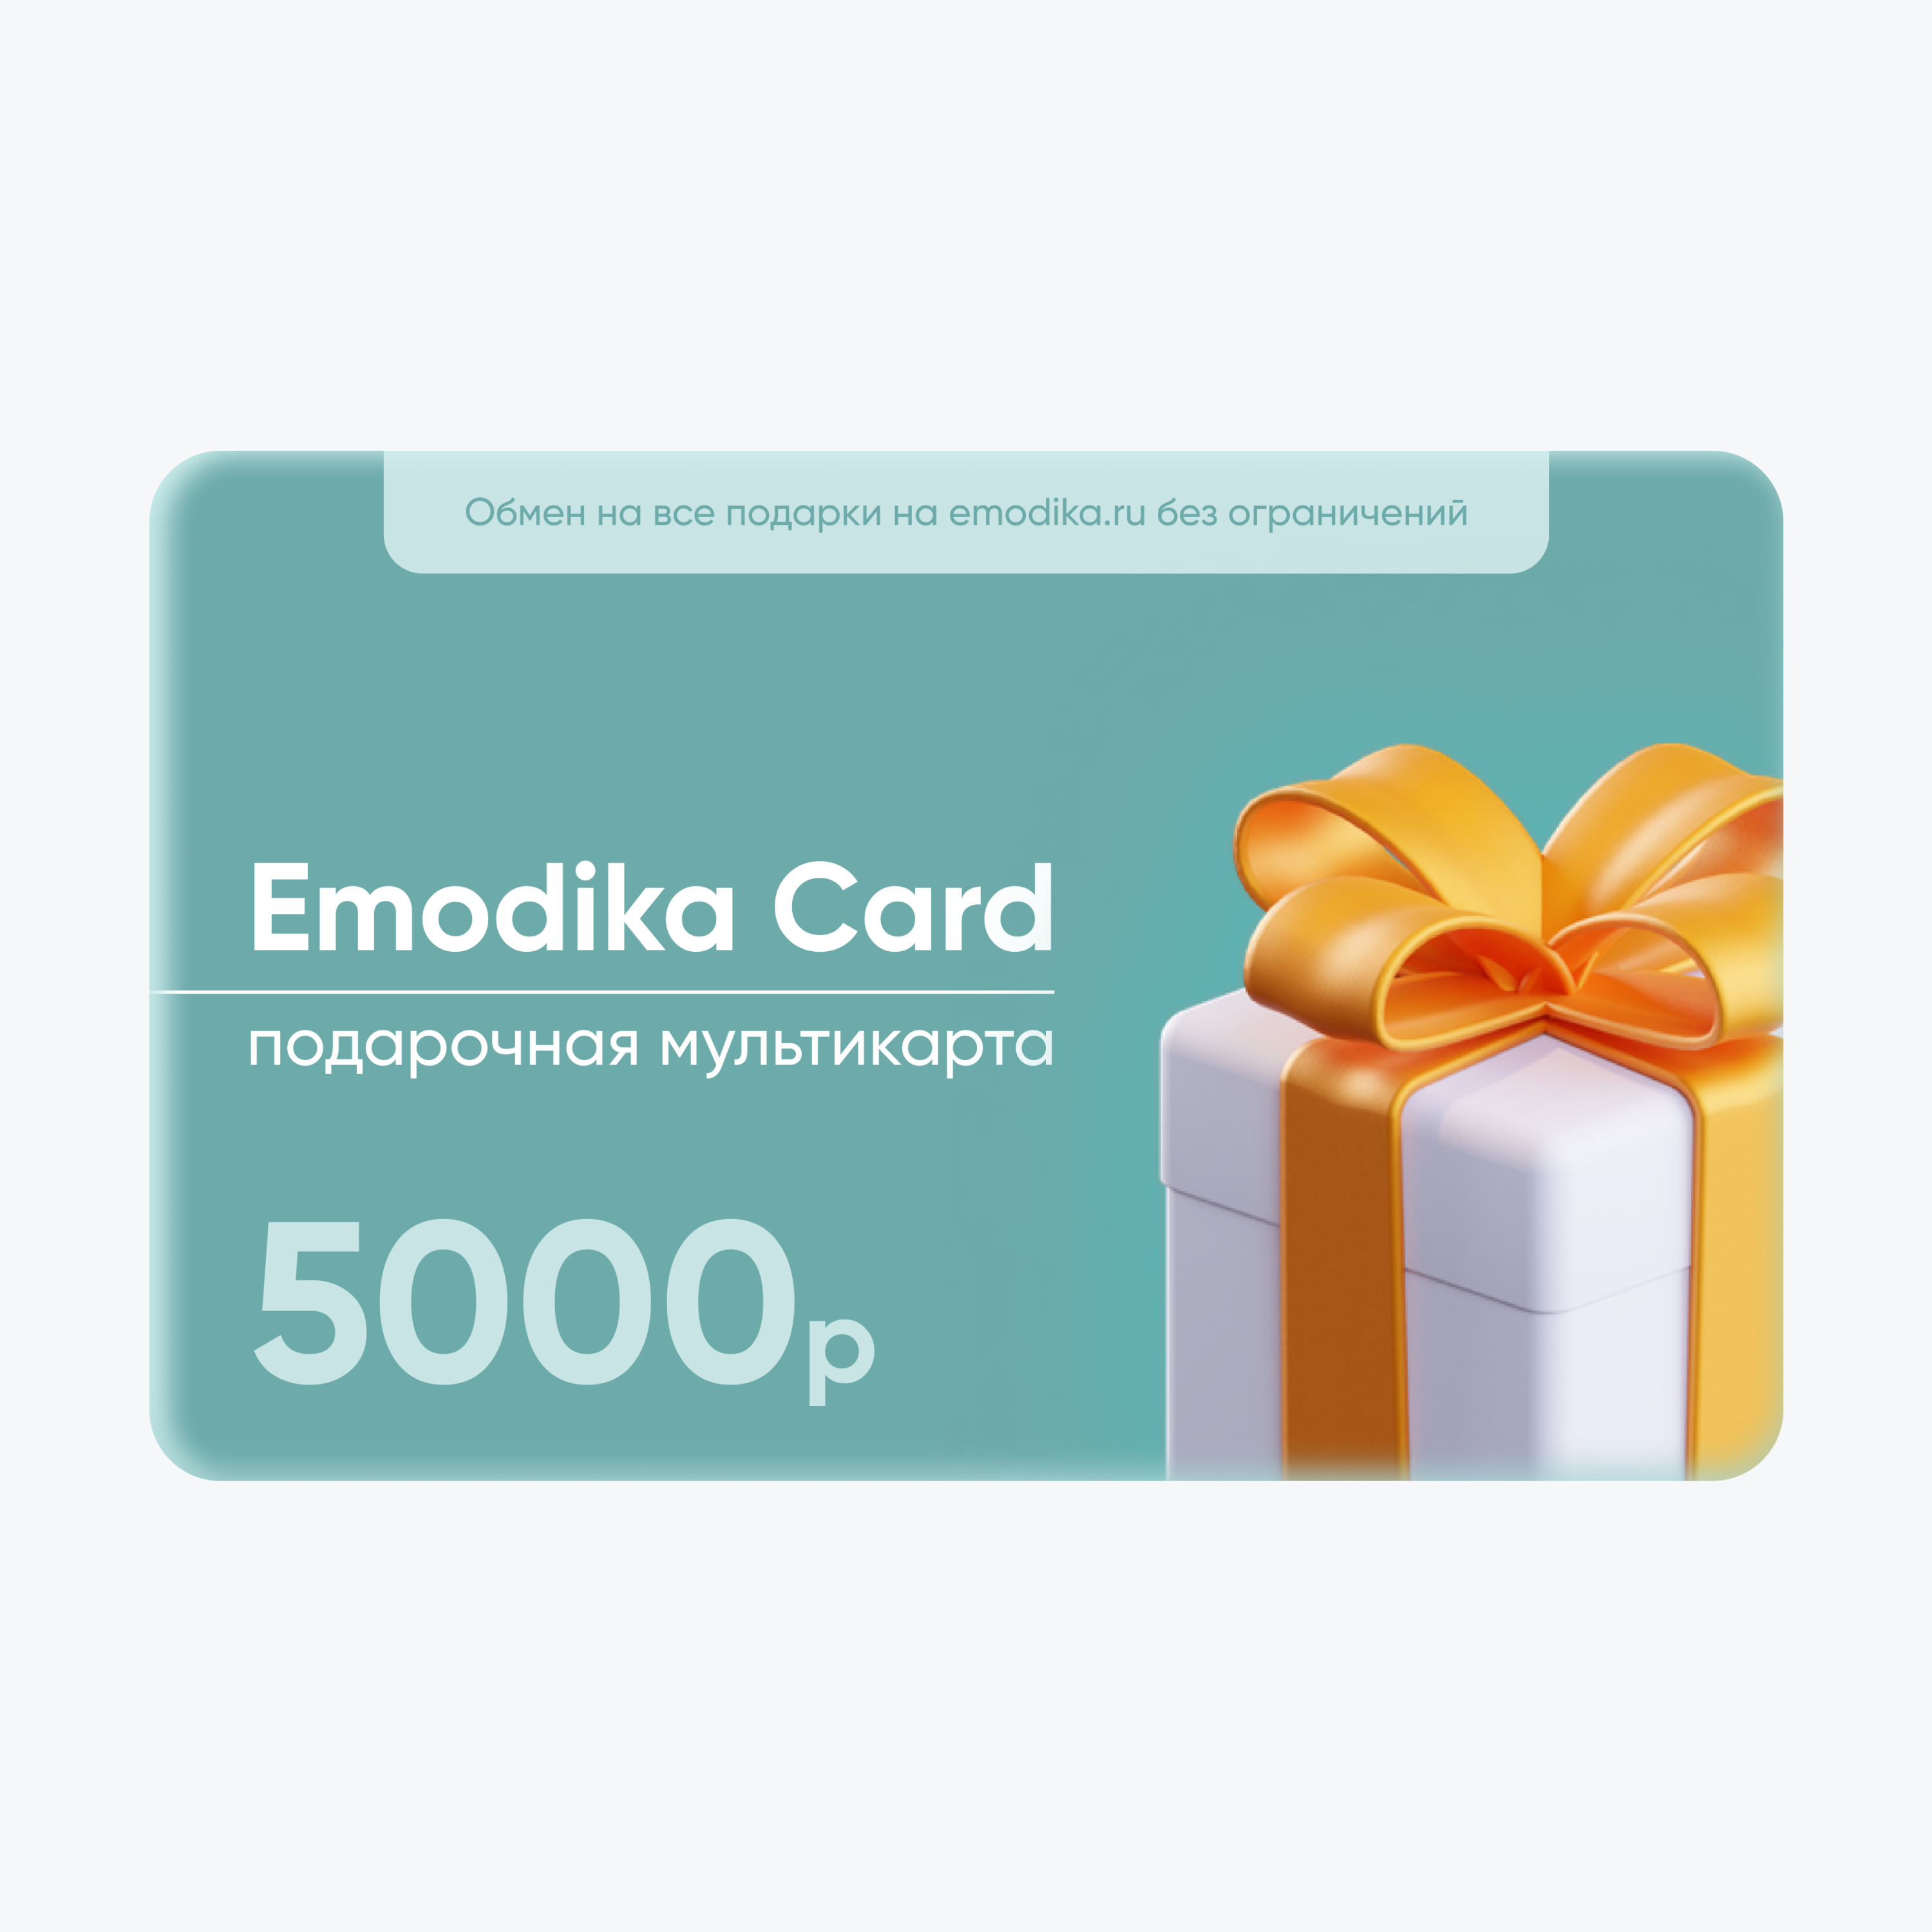 Emodika Card на 5000 рублей